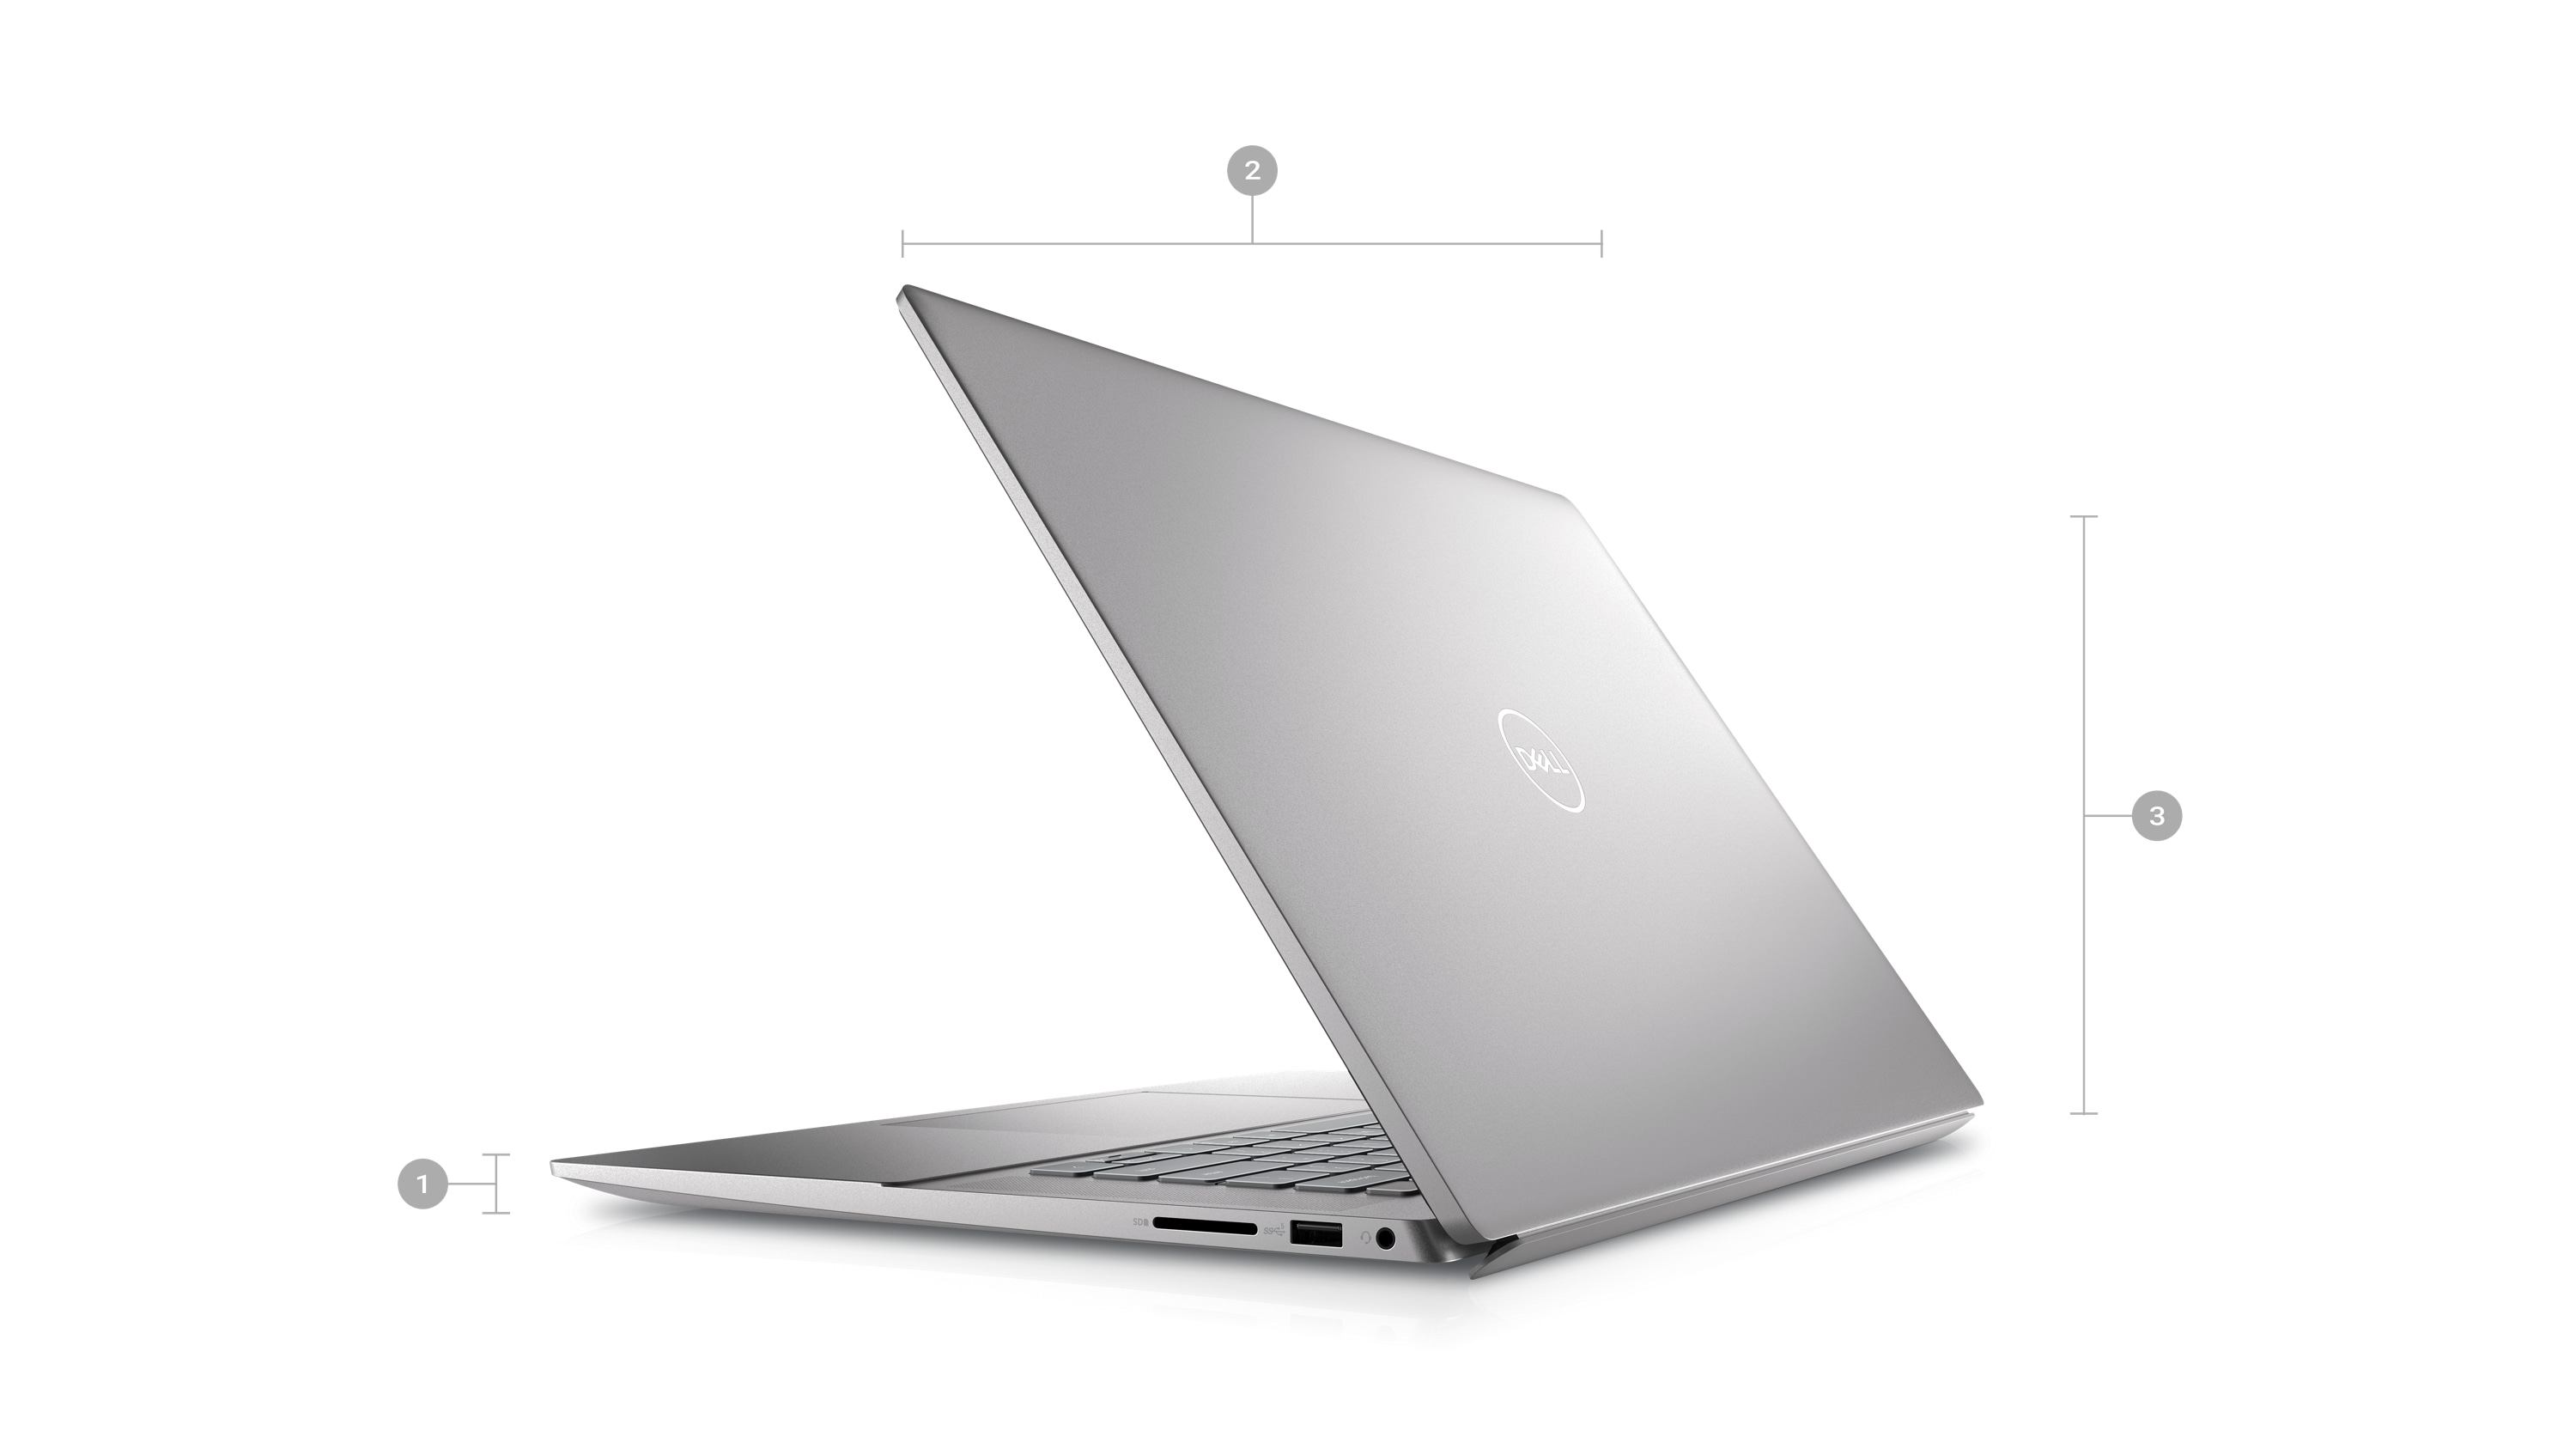 Dell Inspiron 5620ノートパソコンの背面が見える画像。1~3の数字は製品の寸法と重量を示しています。